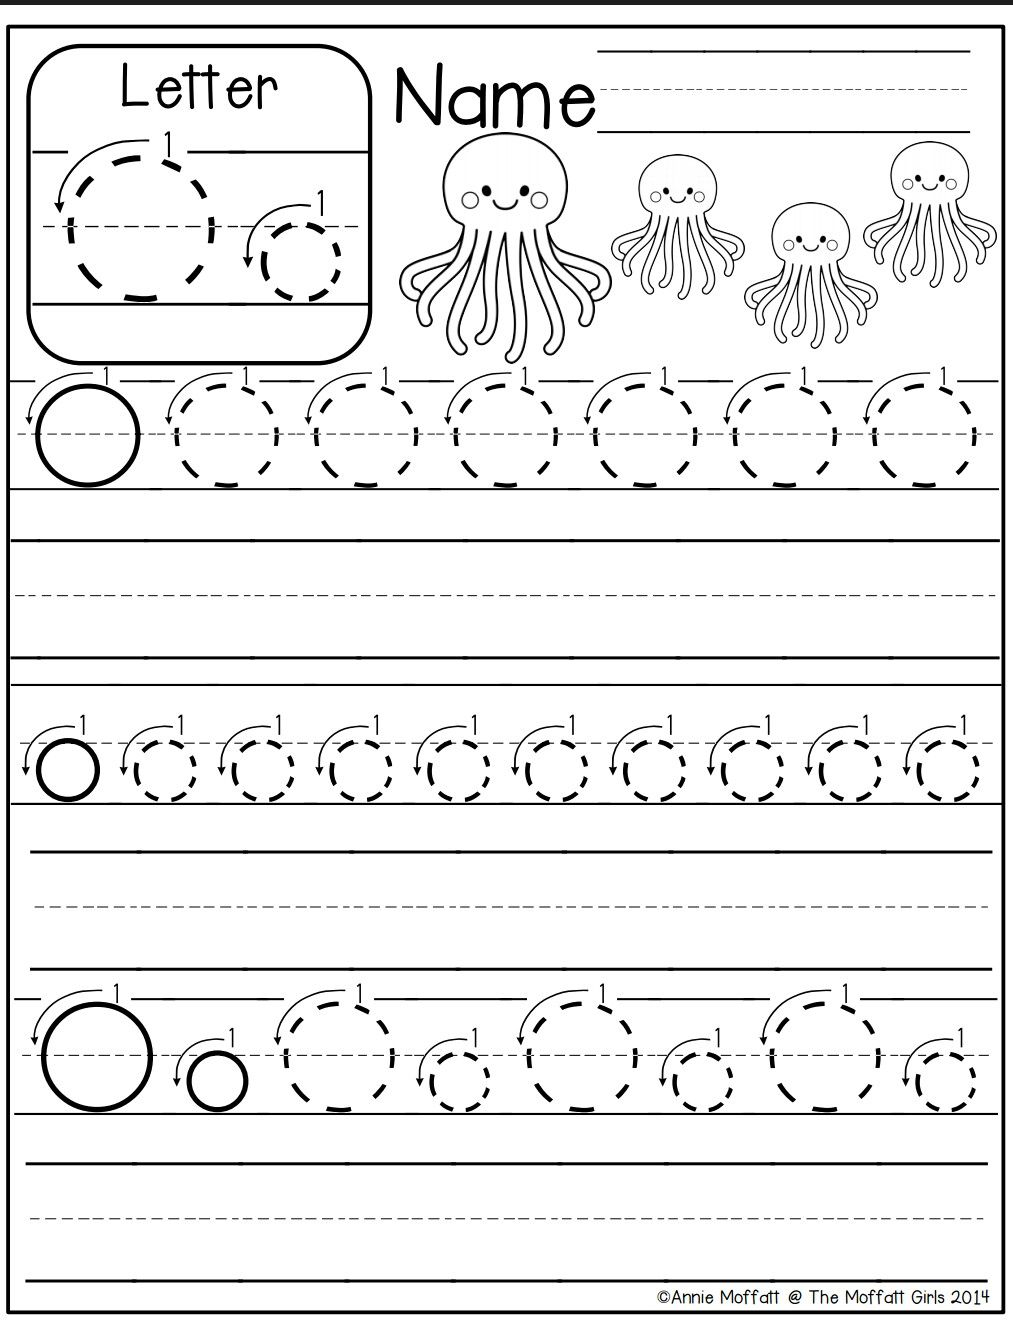 Letter O Worksheet | Letter O Worksheets, Kindergarten within Letter O Worksheets For Preschool